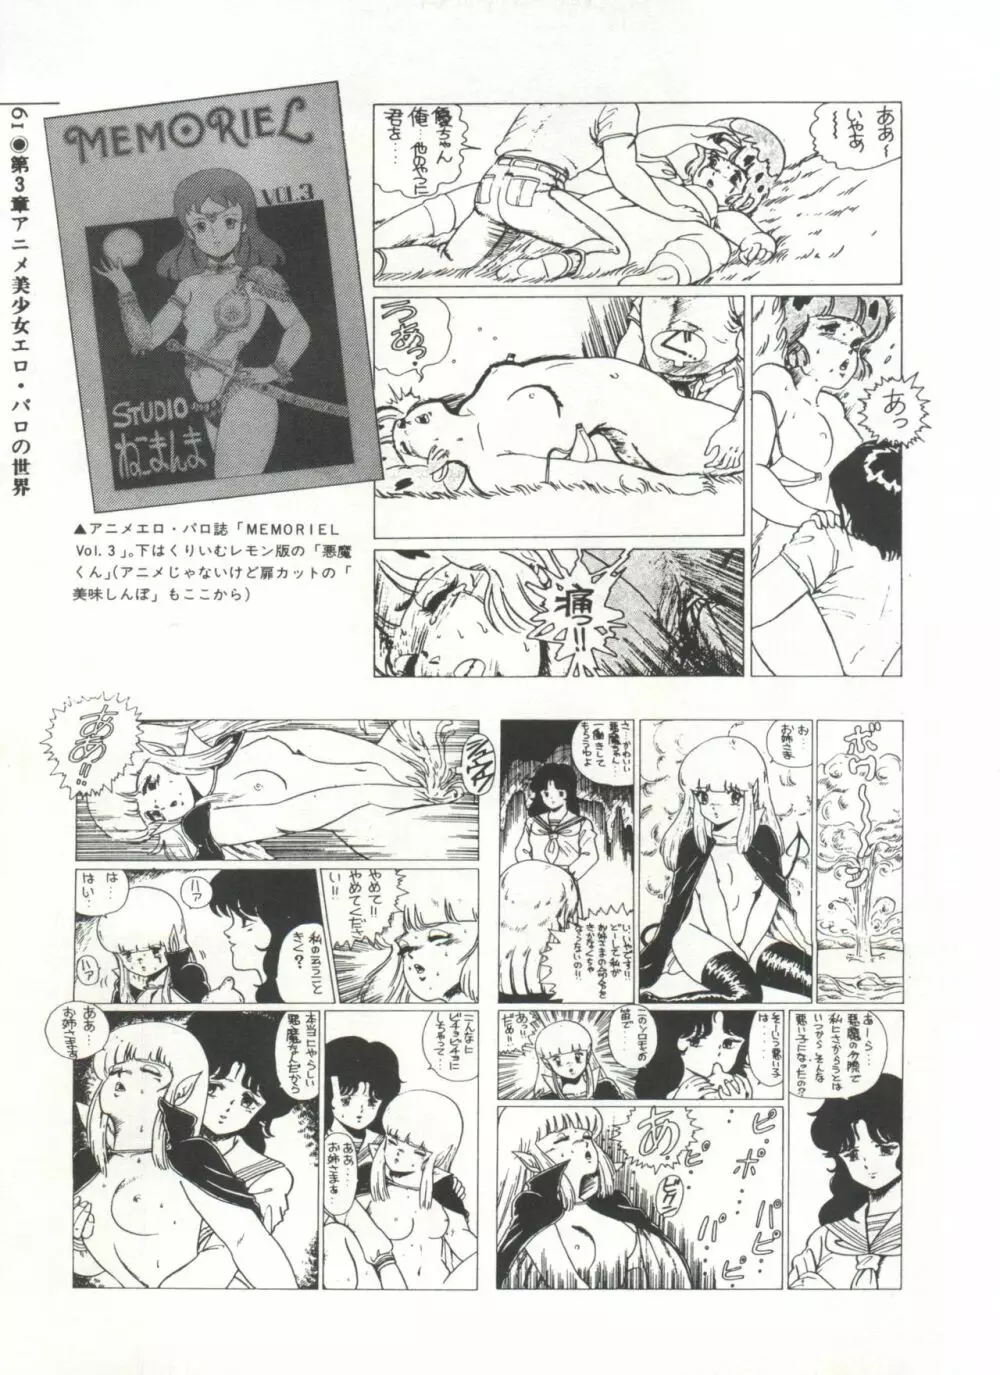 [Anthology] 美少女症候群(2) Lolita syndrome (よろず) 64ページ